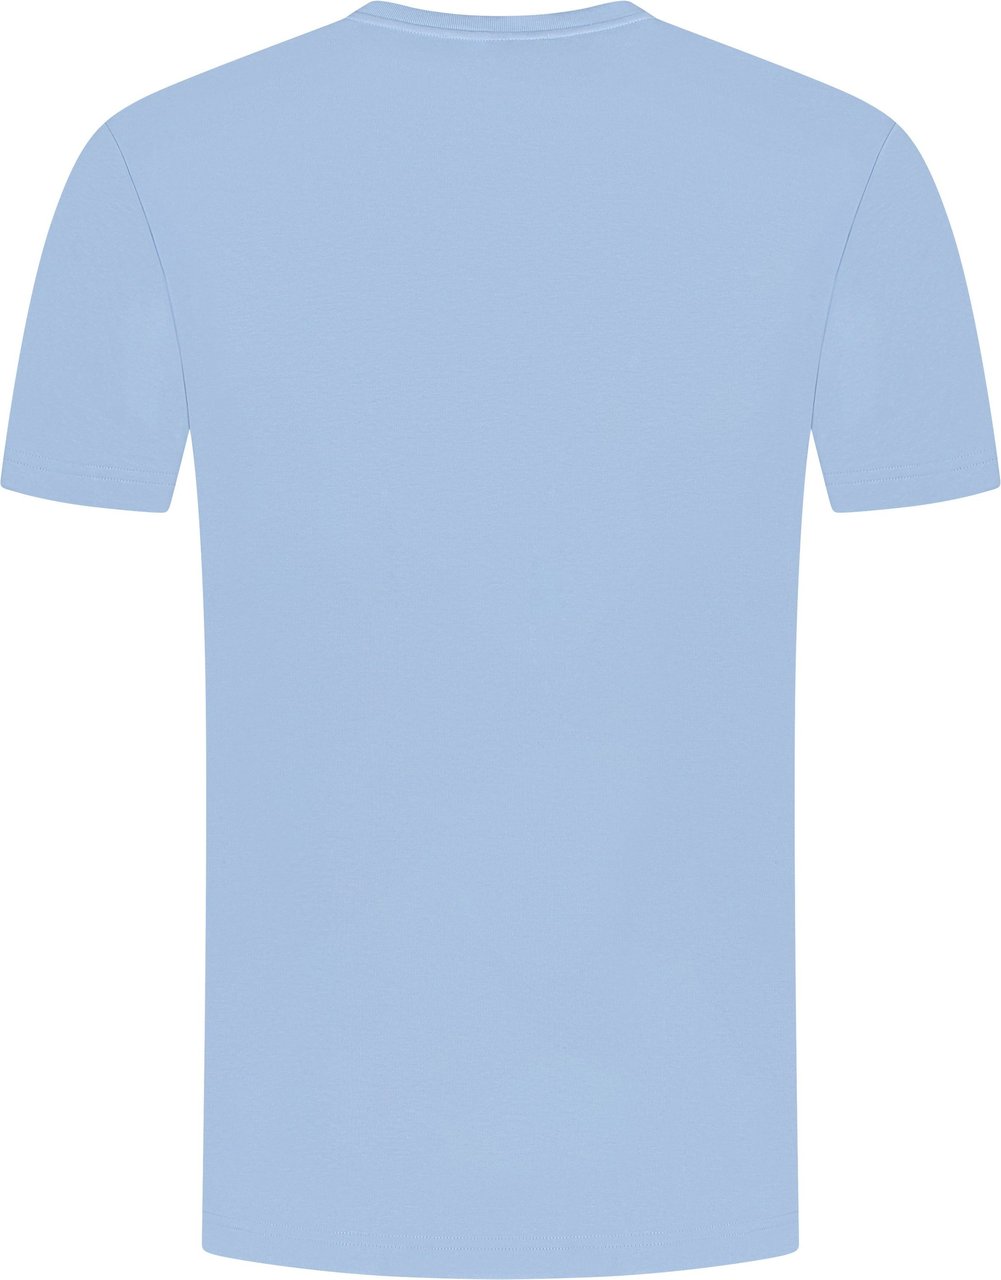 Iceberg Iceberg Heren T-shirt Blauw F075-6307/6402 Blauw